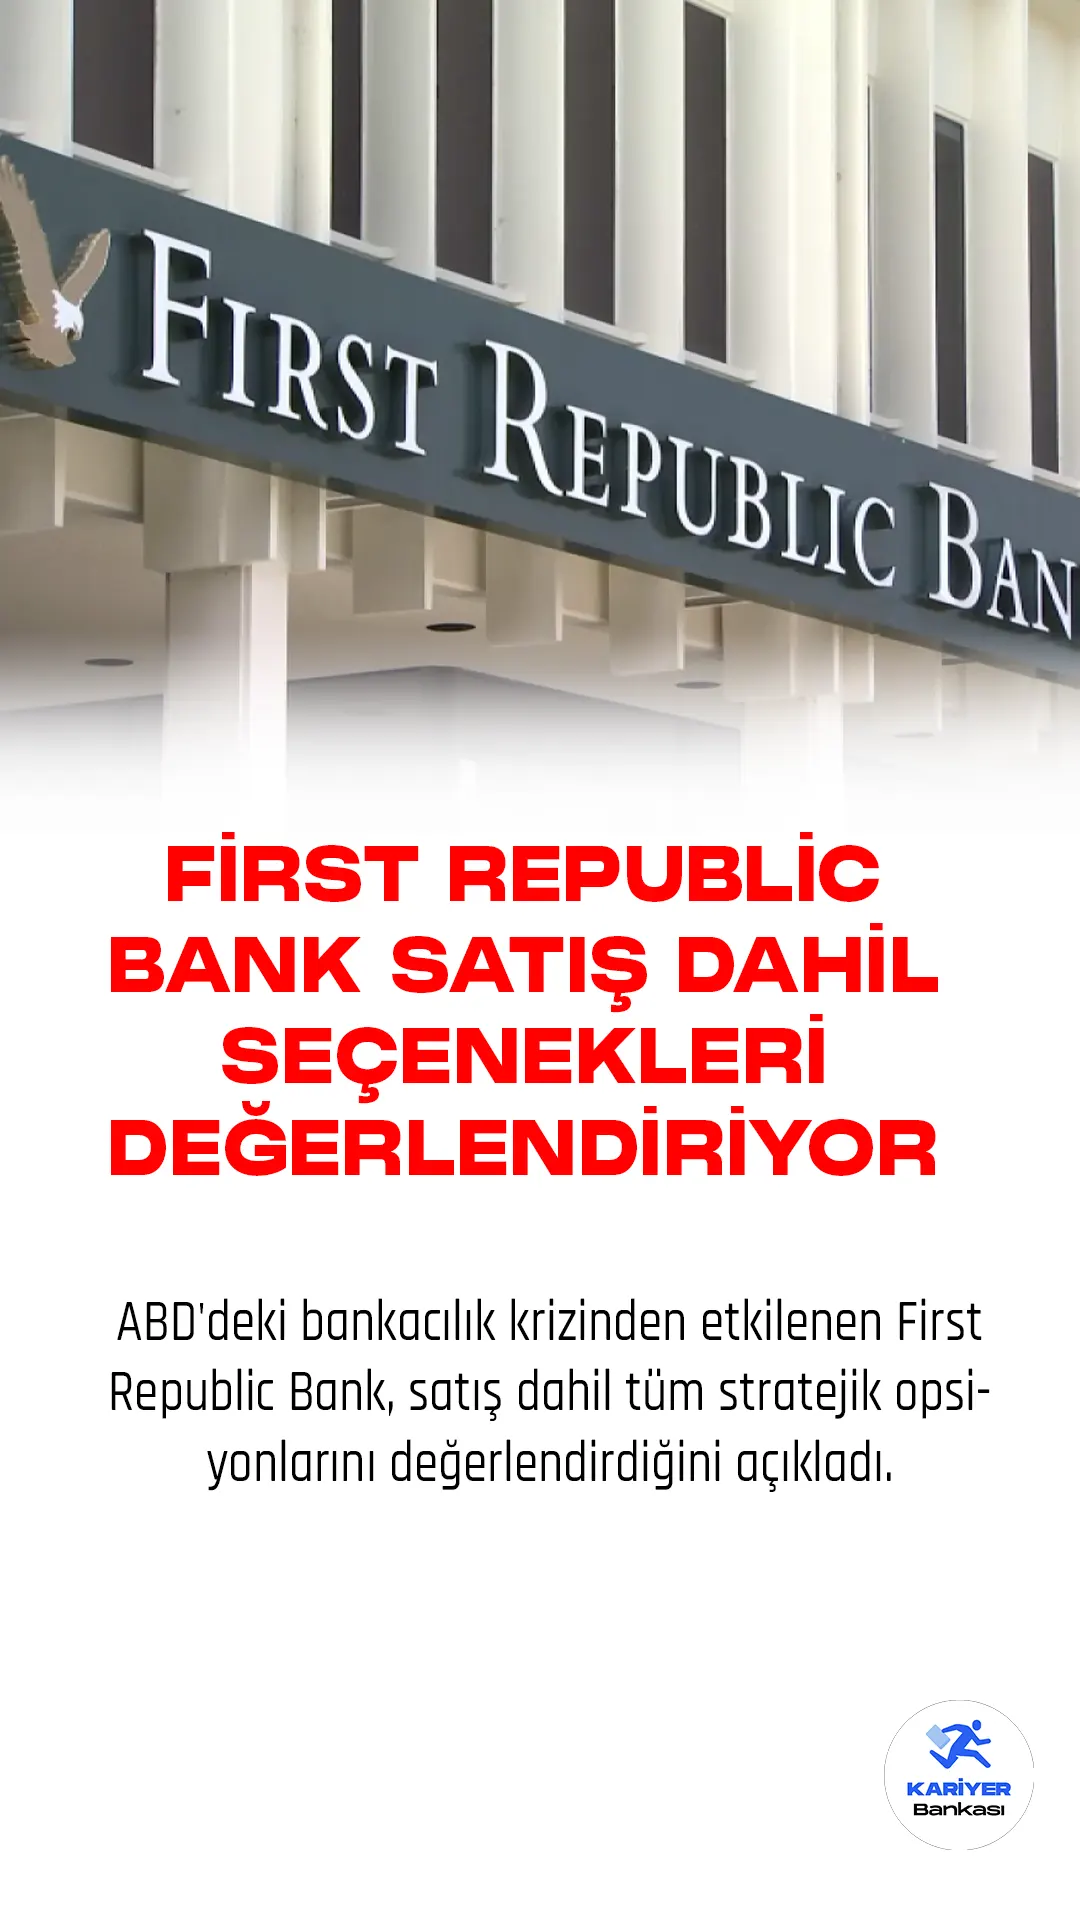 ABD'deki bankacılık krizinden etkilenen First Republic Bank, satış dahil tüm stratejik opsiyonlarını değerlendirdiğini açıkladı.